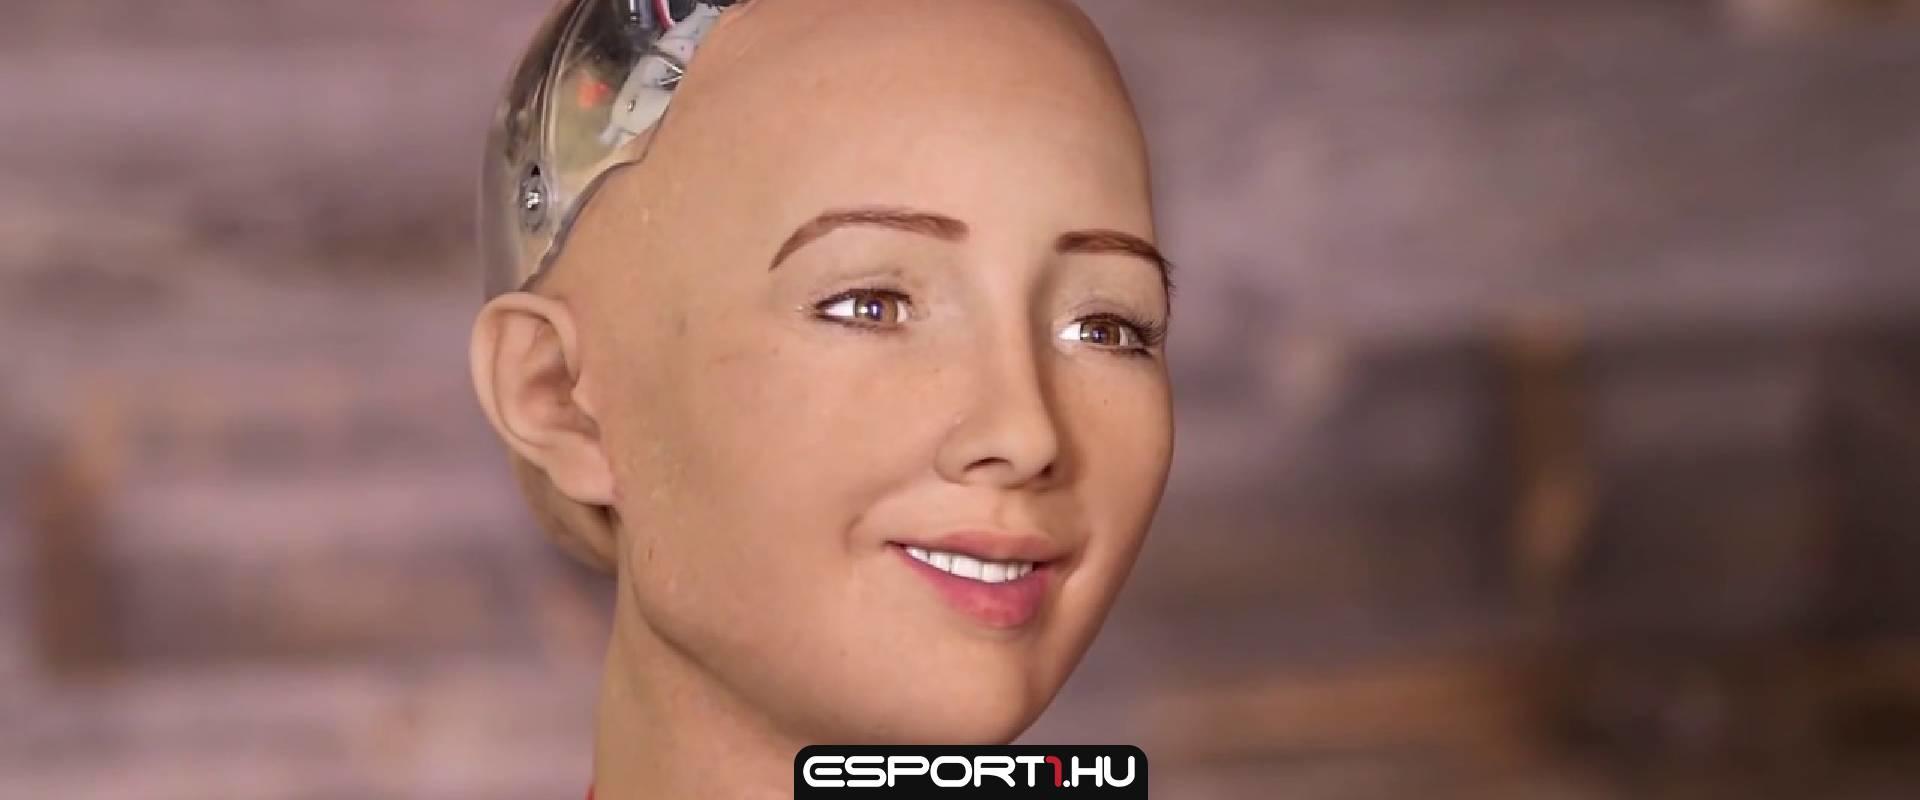 „Elpusztítom az emberiséget... csak vicceltem” - ő Sophia, az első humanoid MI robot